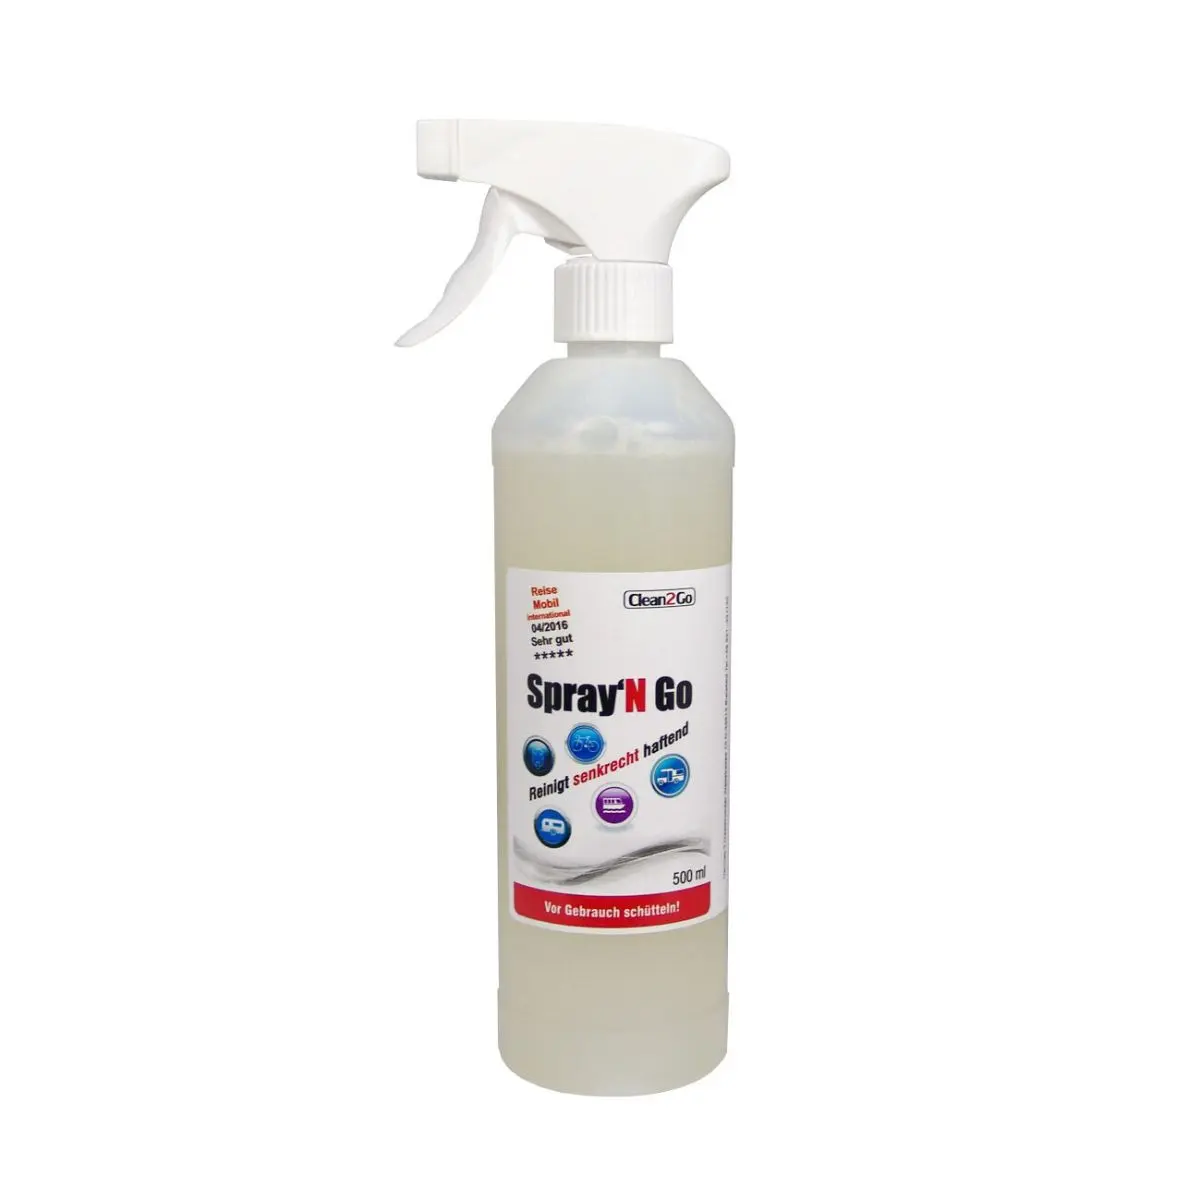 Spray N Go - 500 ml